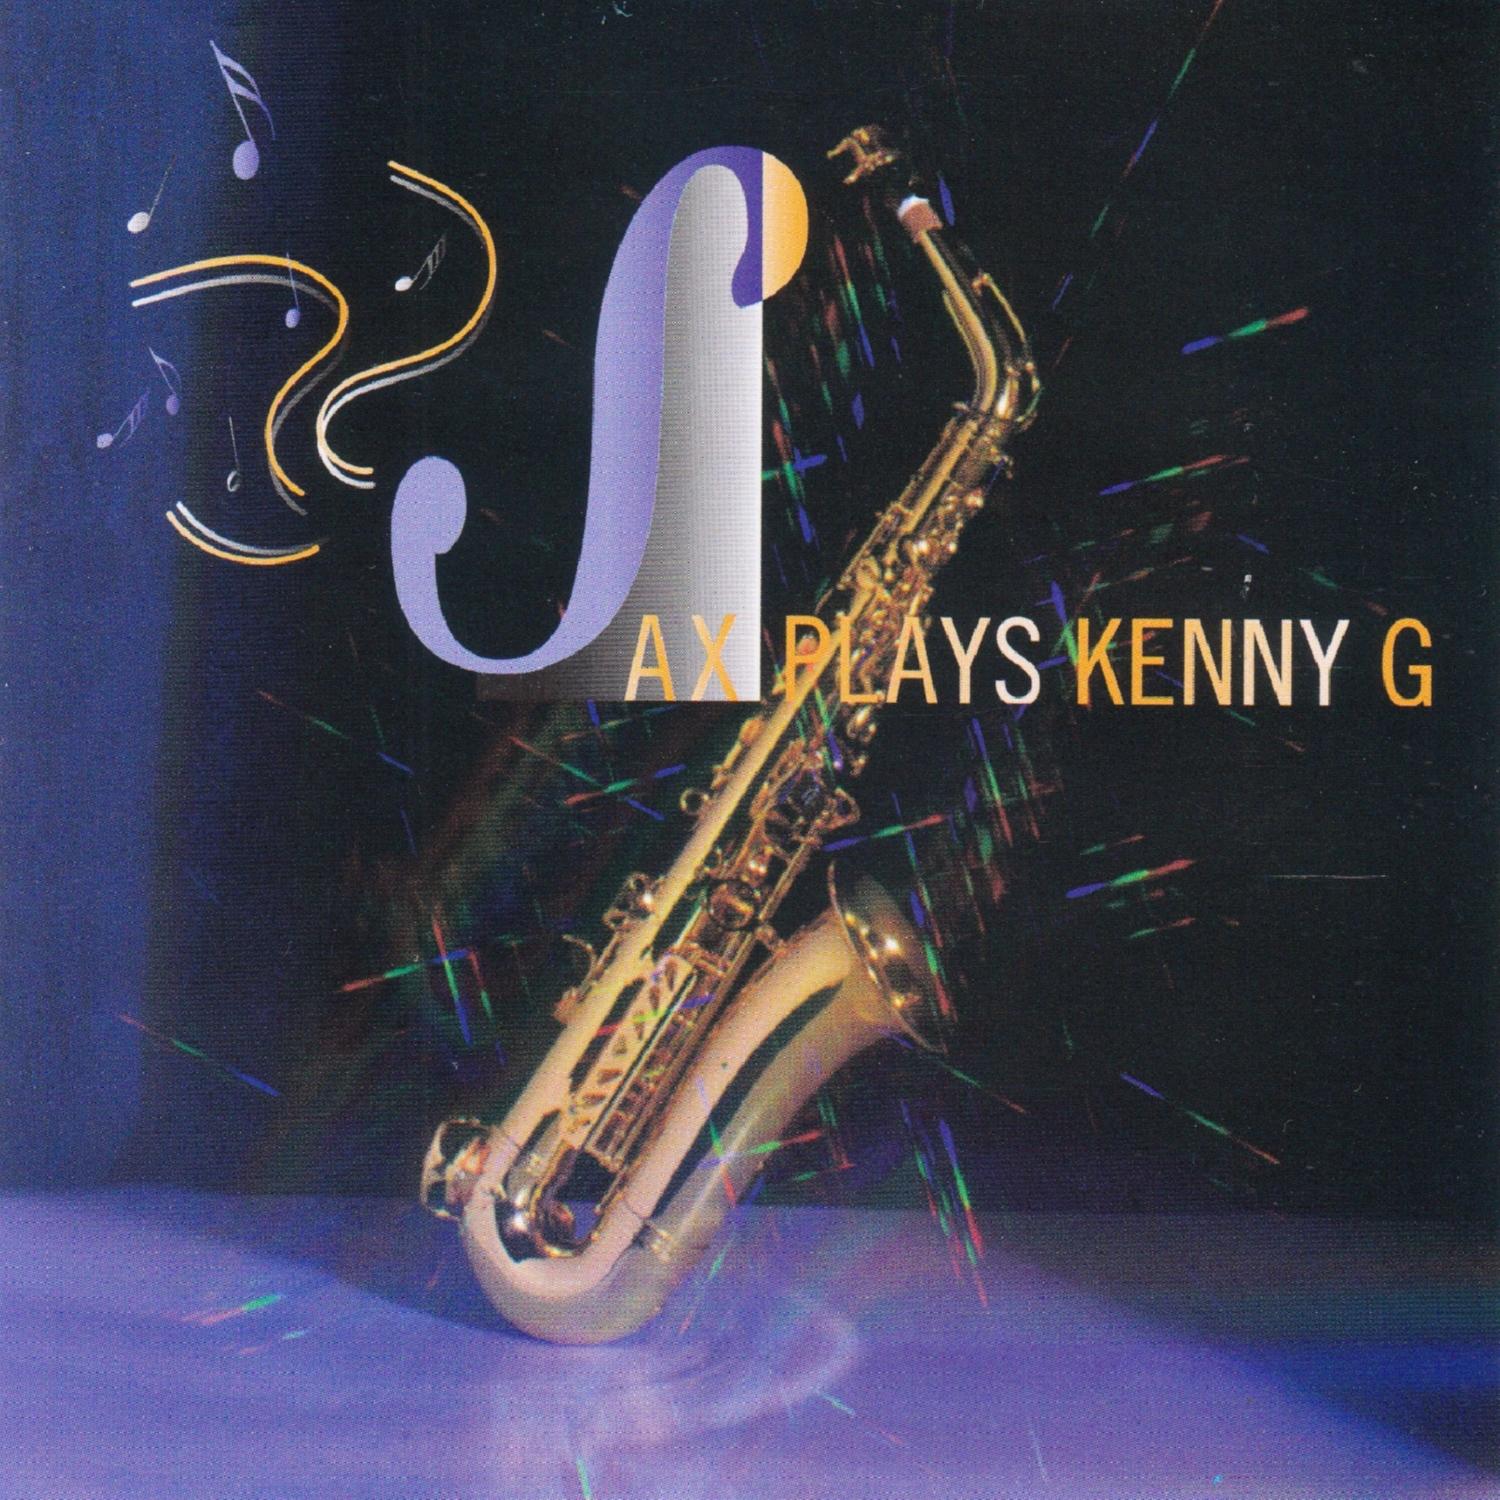 Sax Play Kenny G